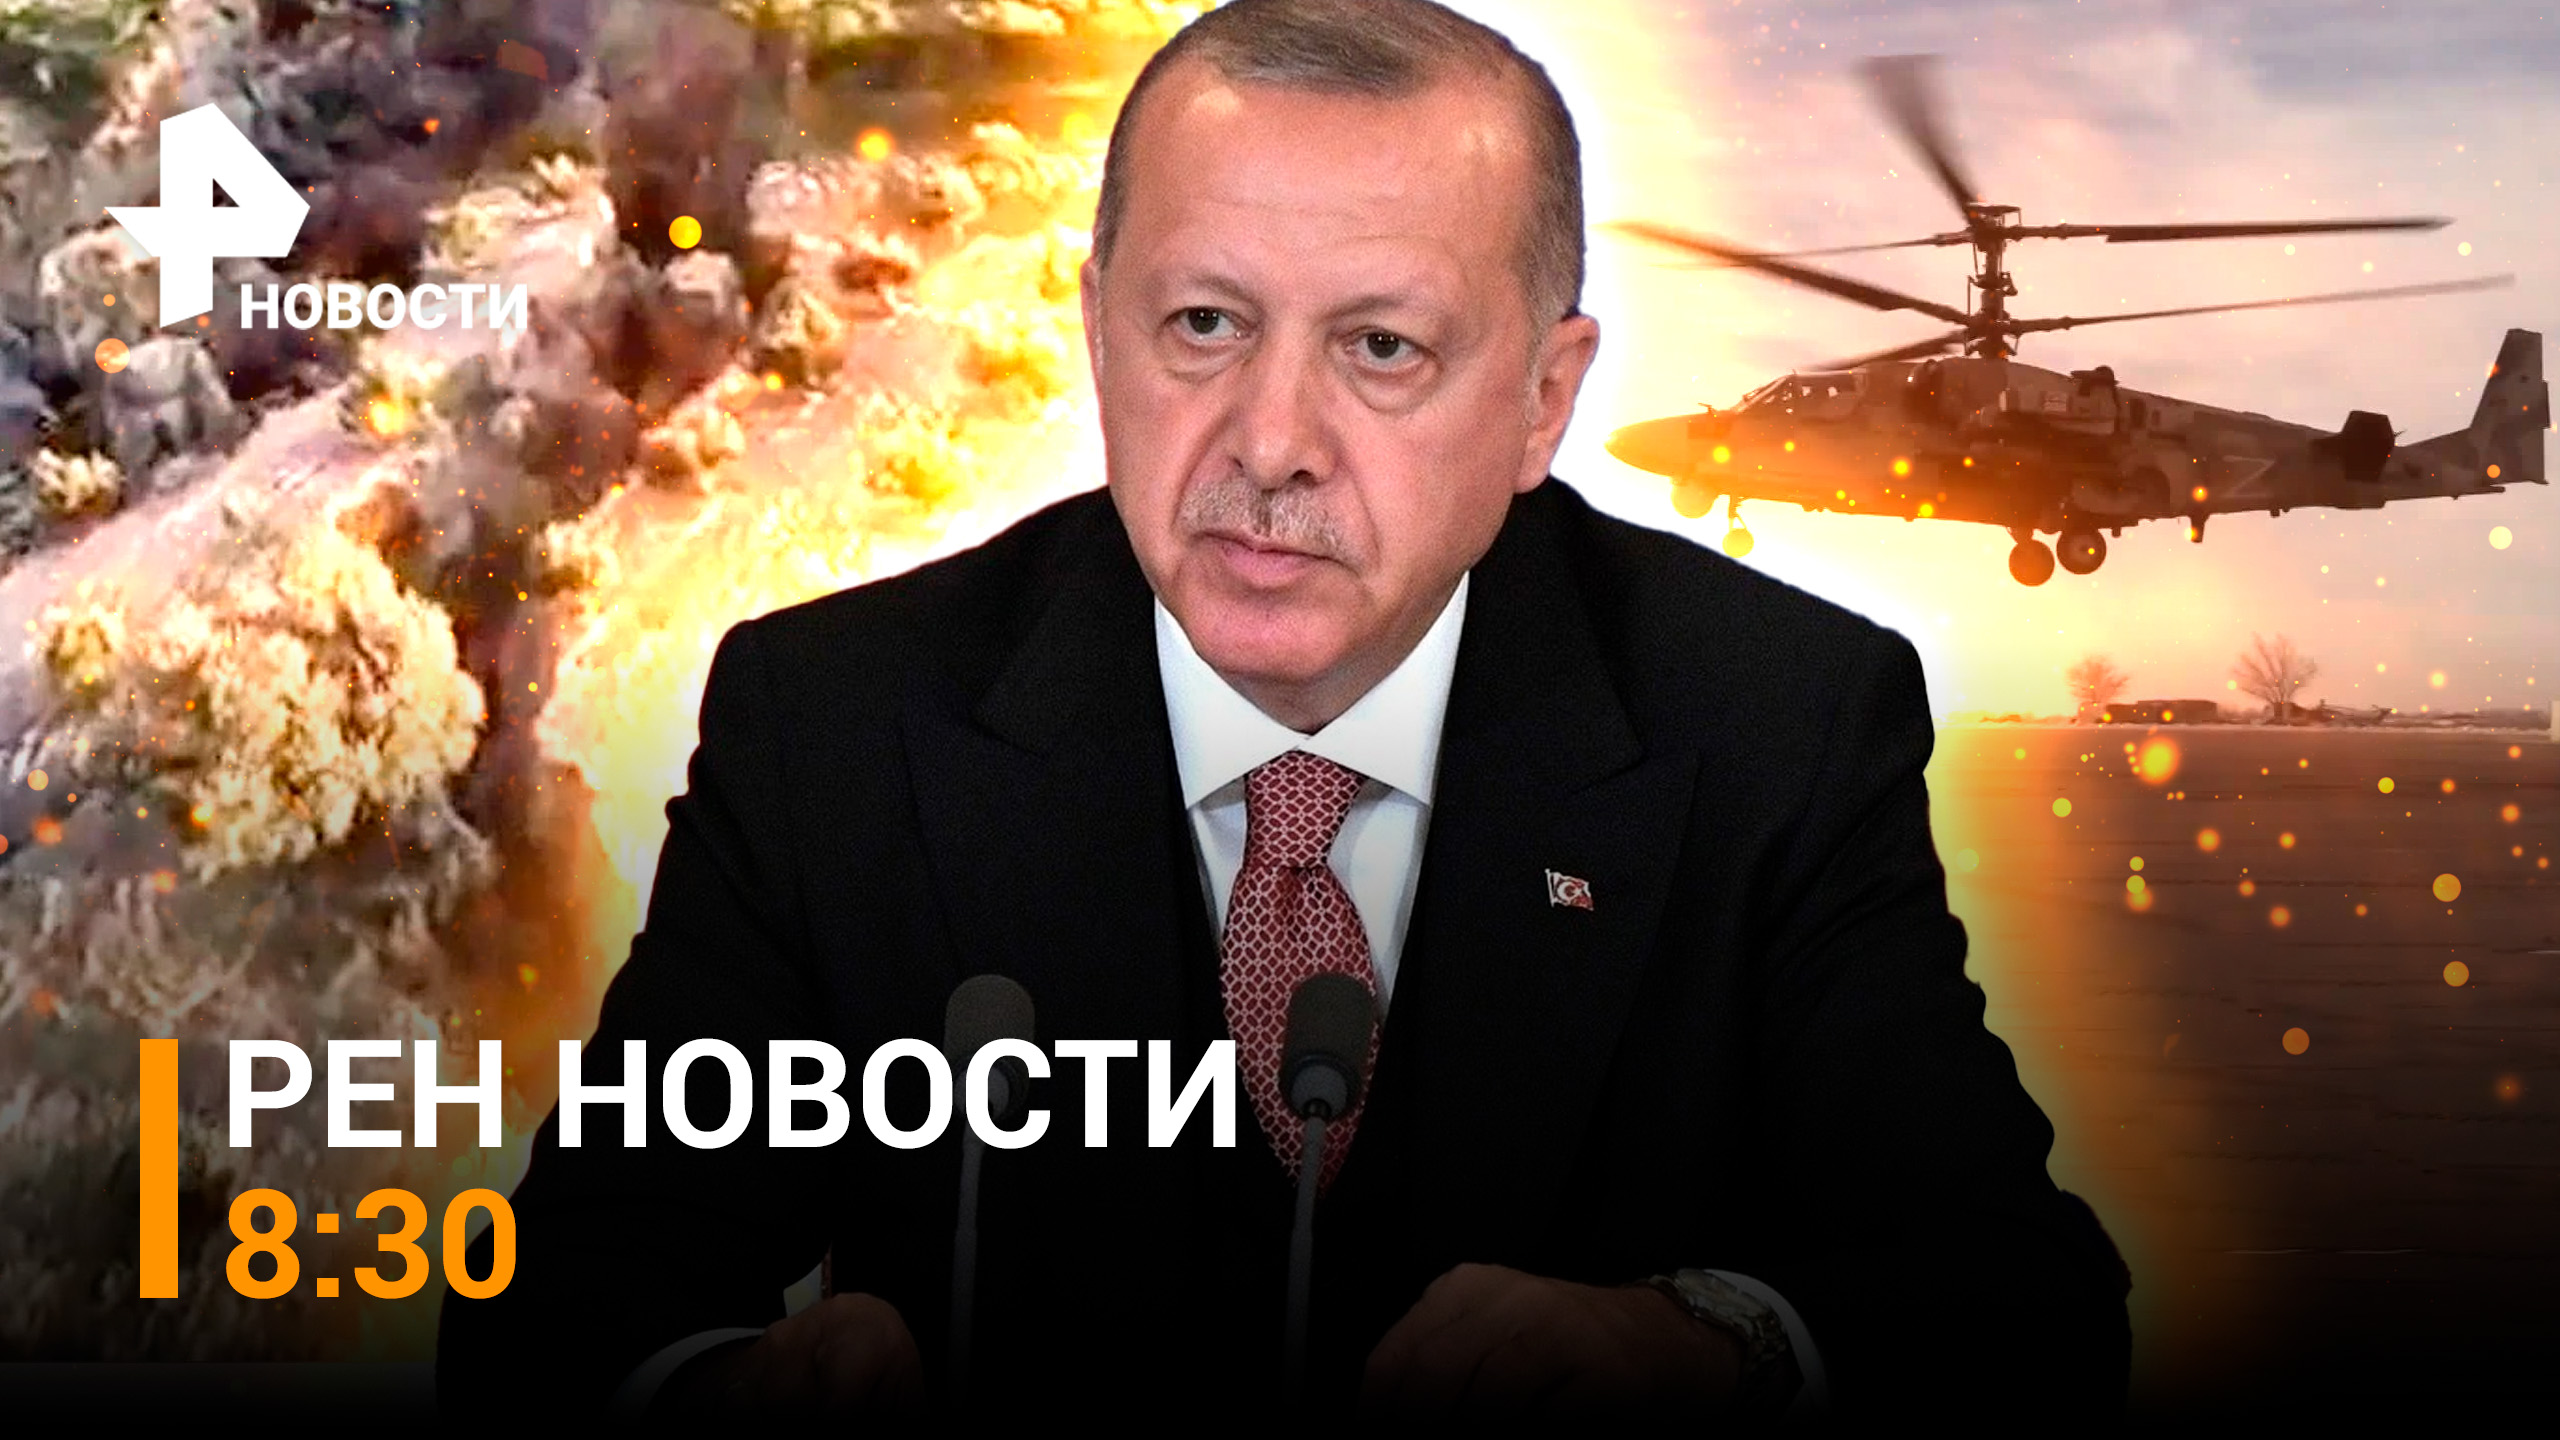 Тектонический разлом в Турции. Наши Ка-52 уничтожают укрепления ВСУ / РЕН НОВОСТИ 8:30 от 13.02.22